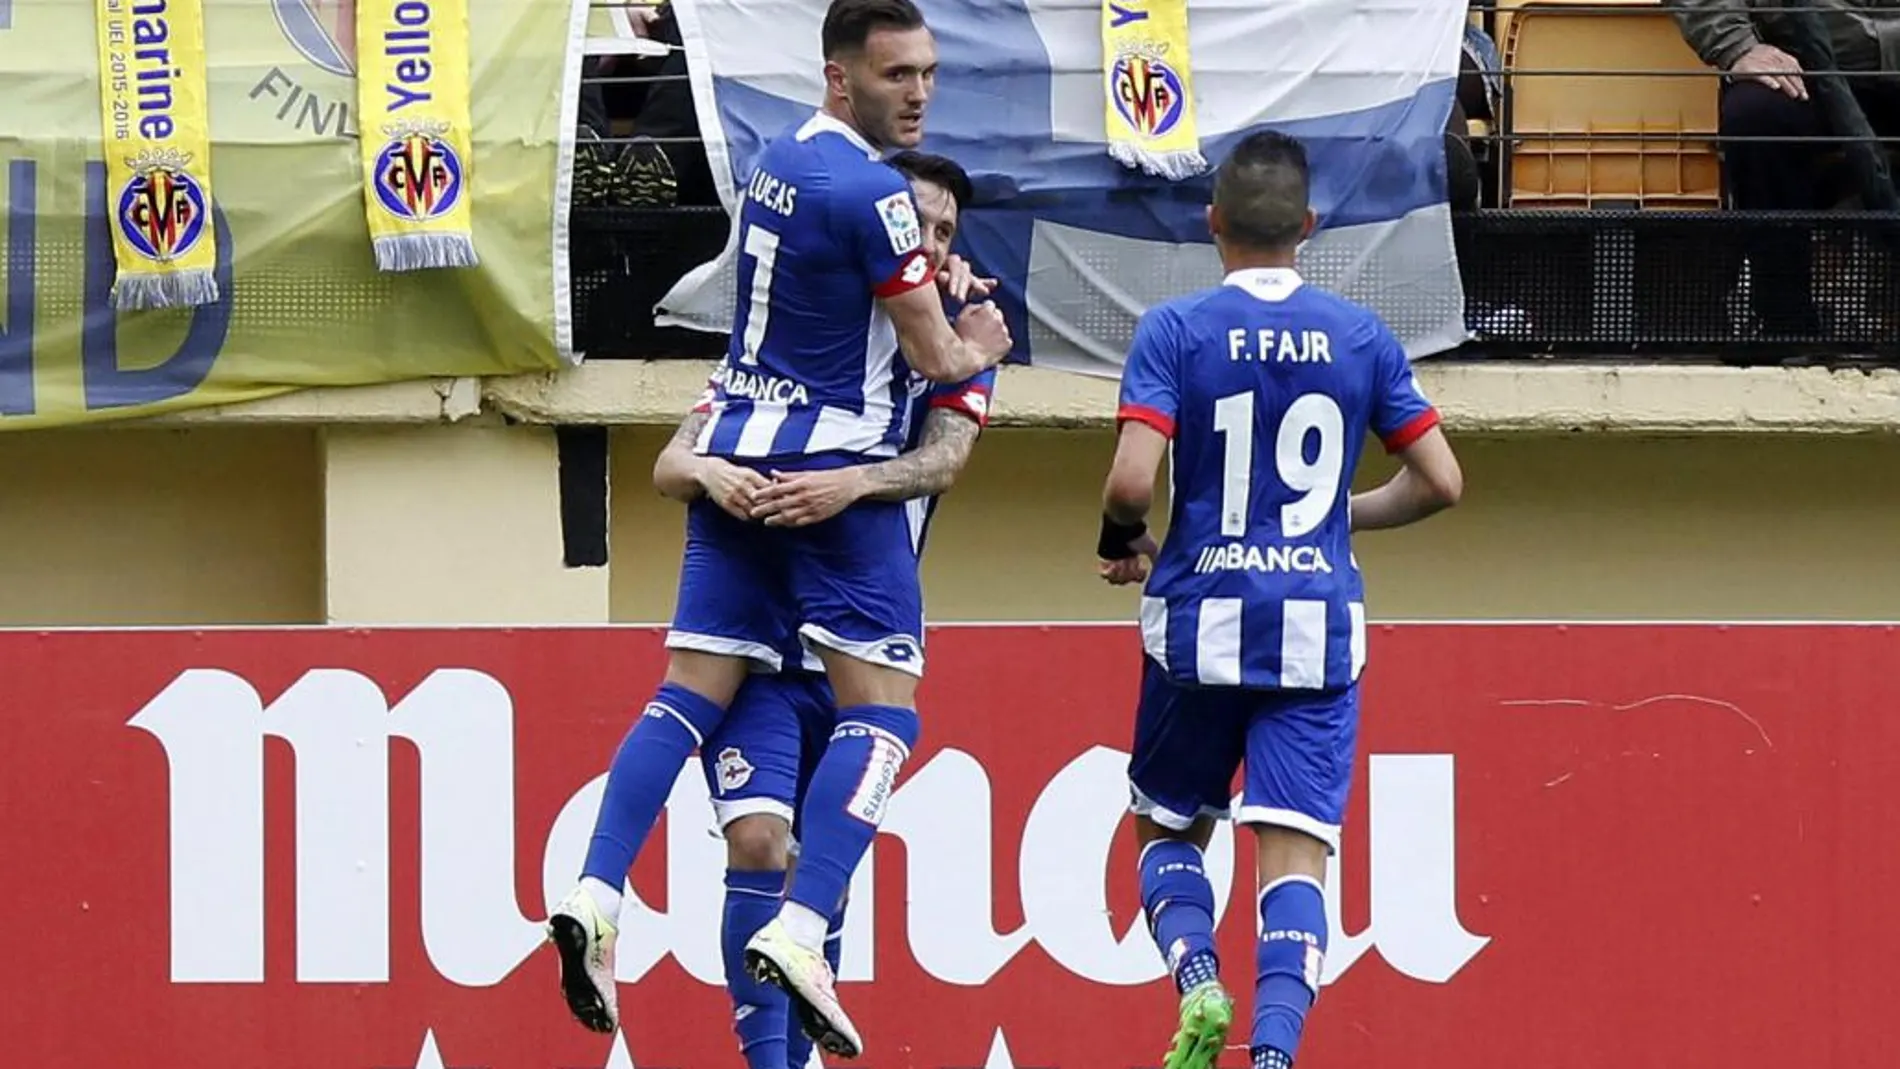 El jugador de Deportivo Lucas celebra con sus compañeros el segundo gol de su equipo frente al Villarreal